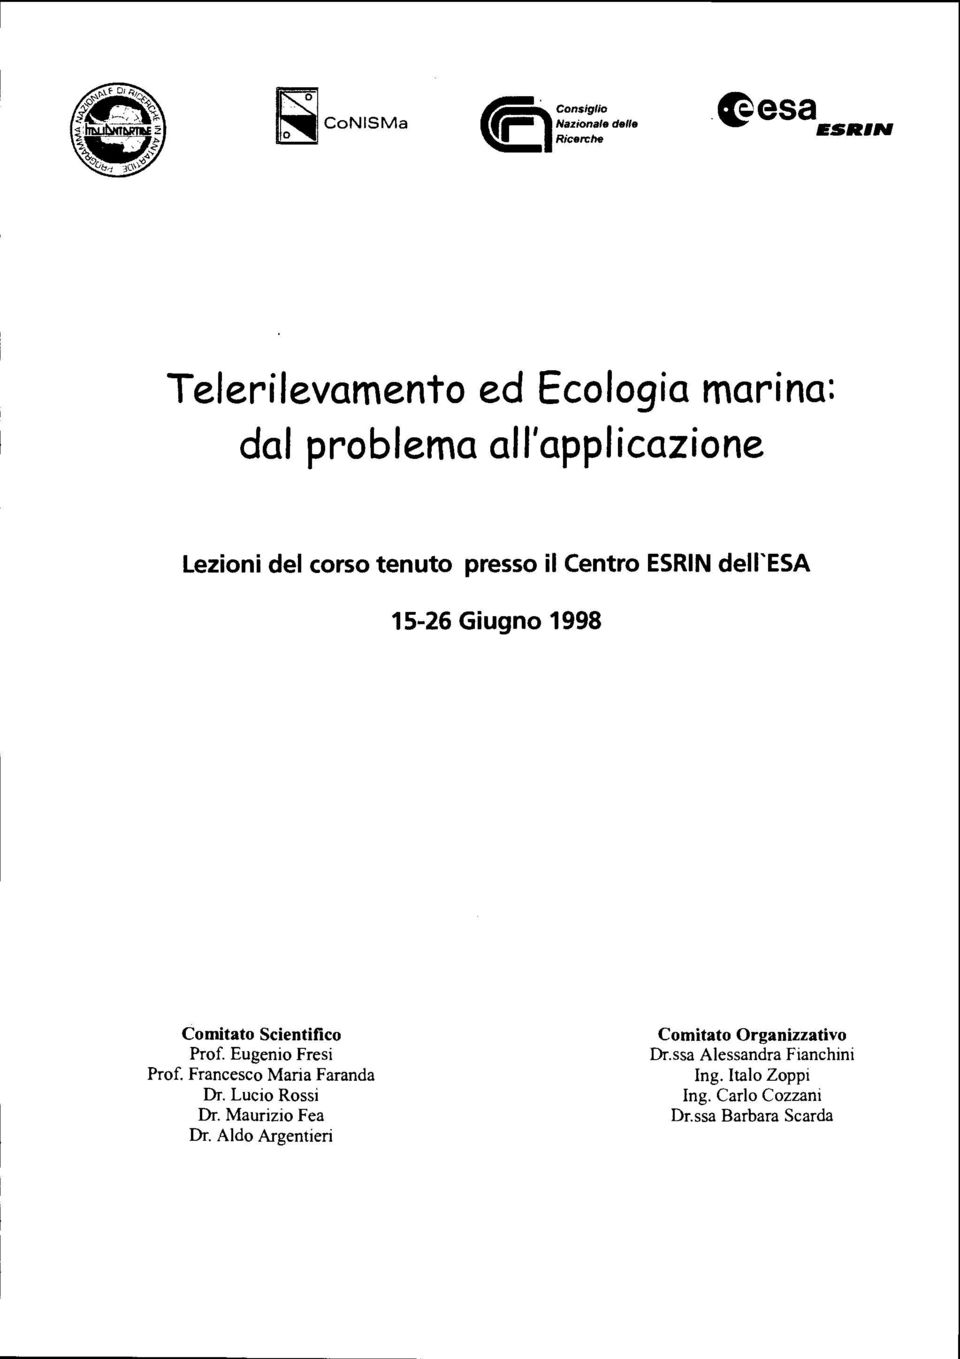 ii Centro ESRINdell'ESA 15-26 Giugno 1998 Comitato Scientifico Prof. Eugenio Fresi Prof.